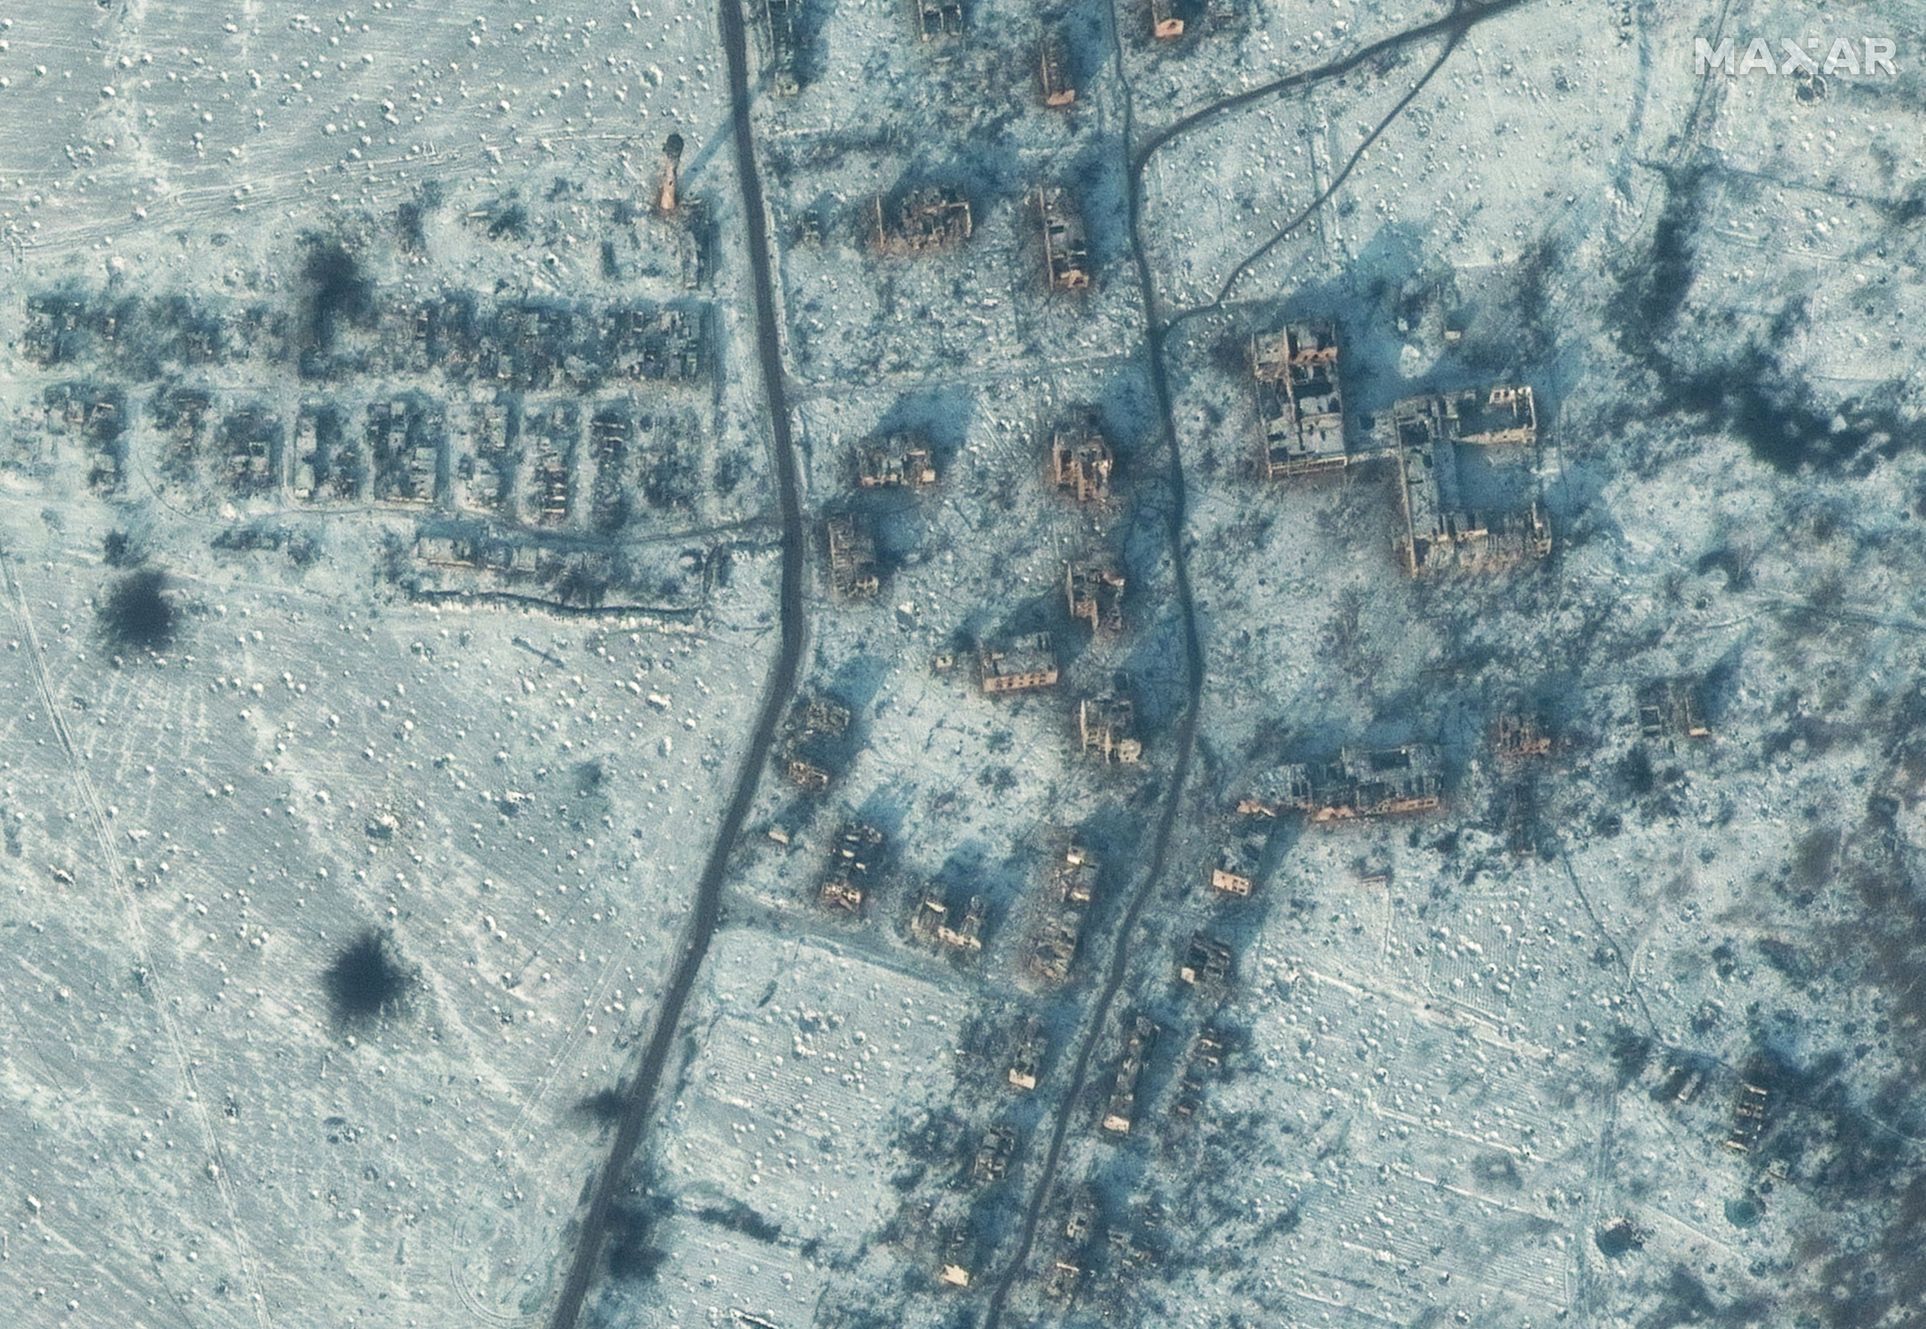 Satelitní fotografie zničených budov ve městě Soledar, o které se nyní vedou těžké boje.